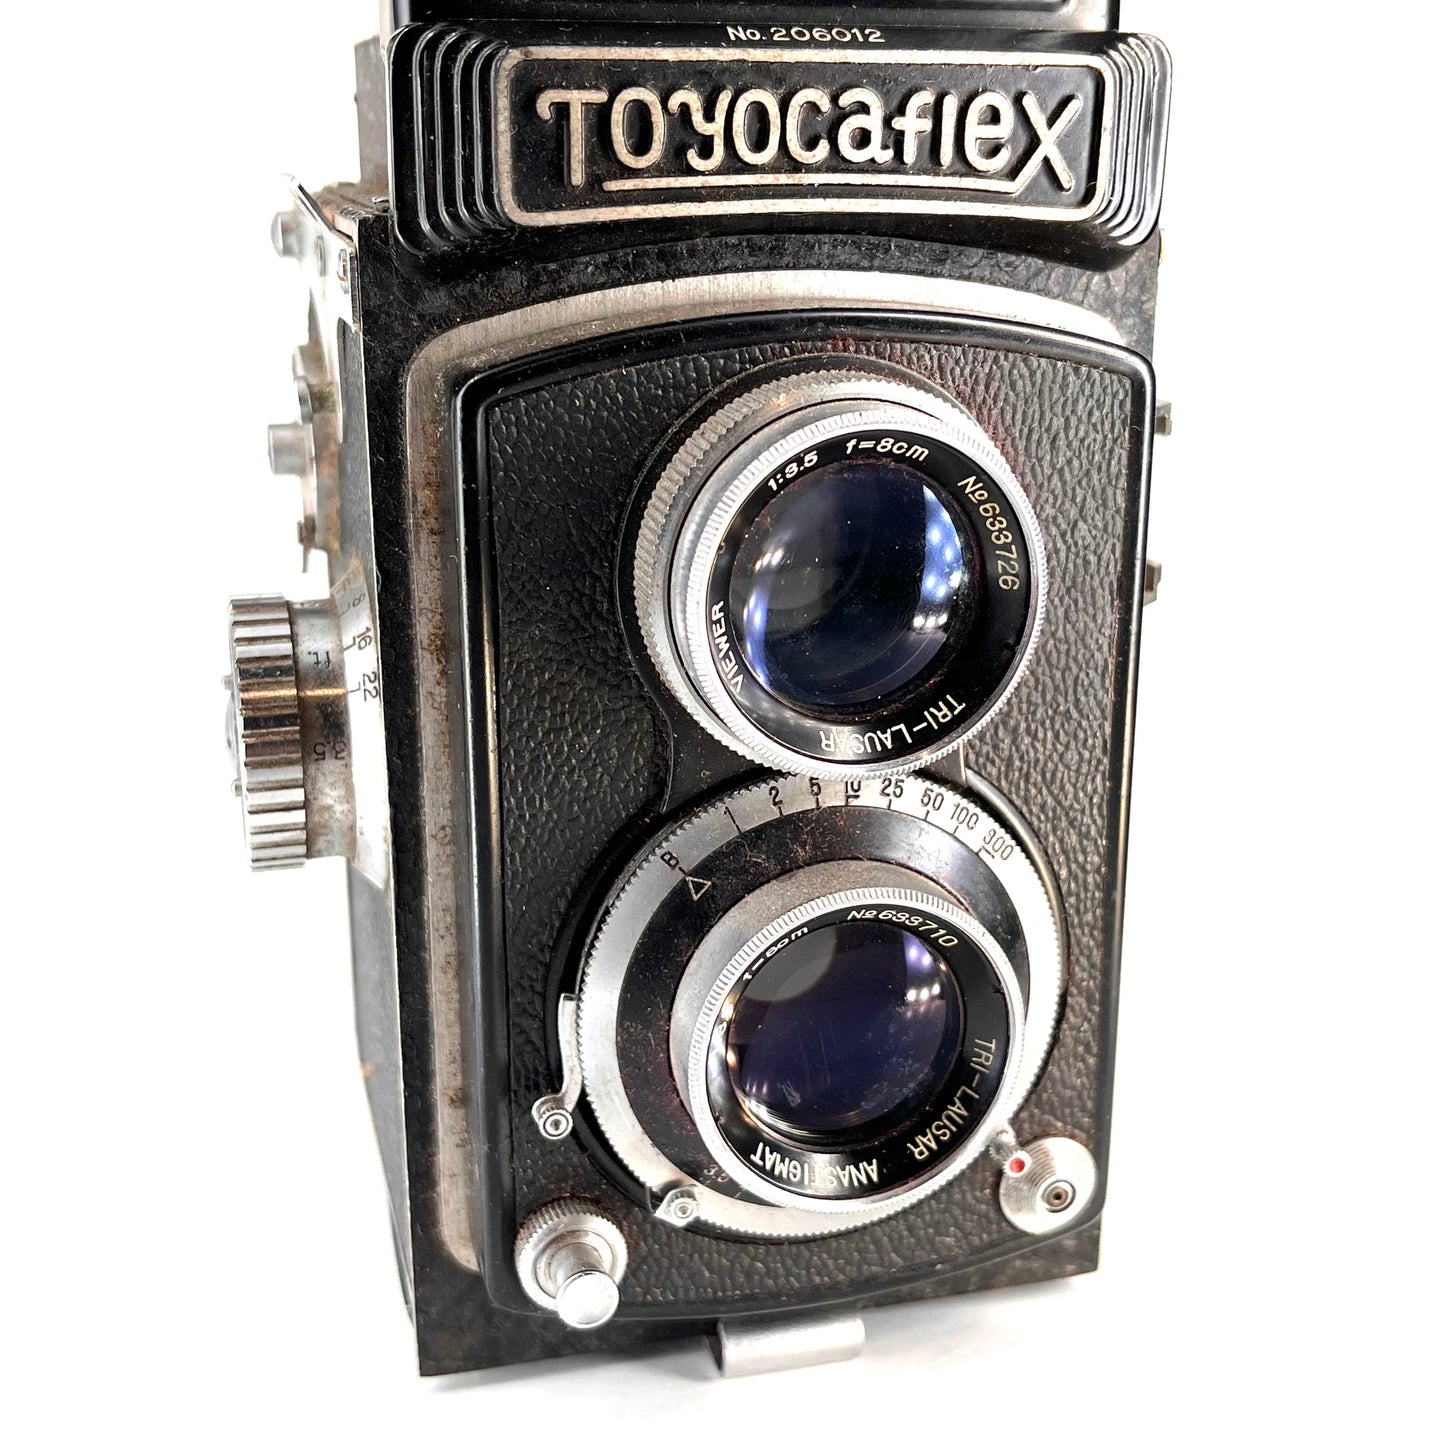 Toyocaflex Ib TLR Camera w/ f3.5 80mm